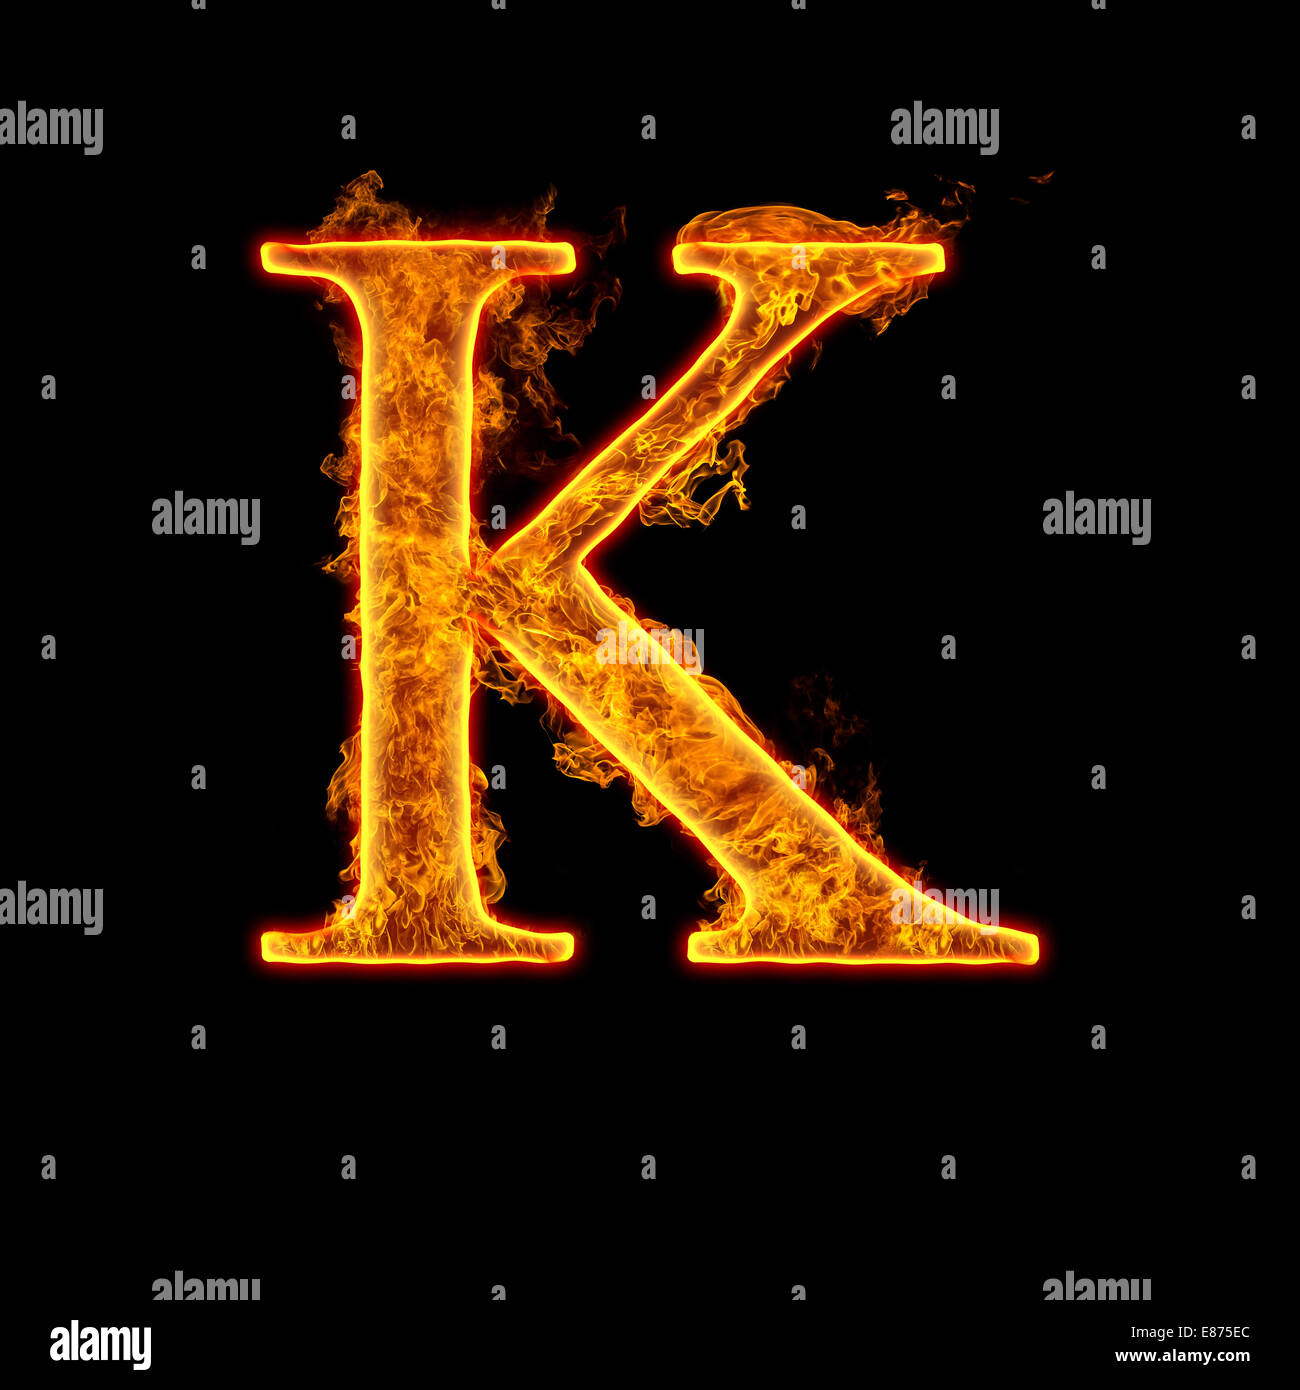 Feuer Alphabet Buchstaben K Auf Schwarzem Hintergrund Isoliert Stockfotografie Alamy